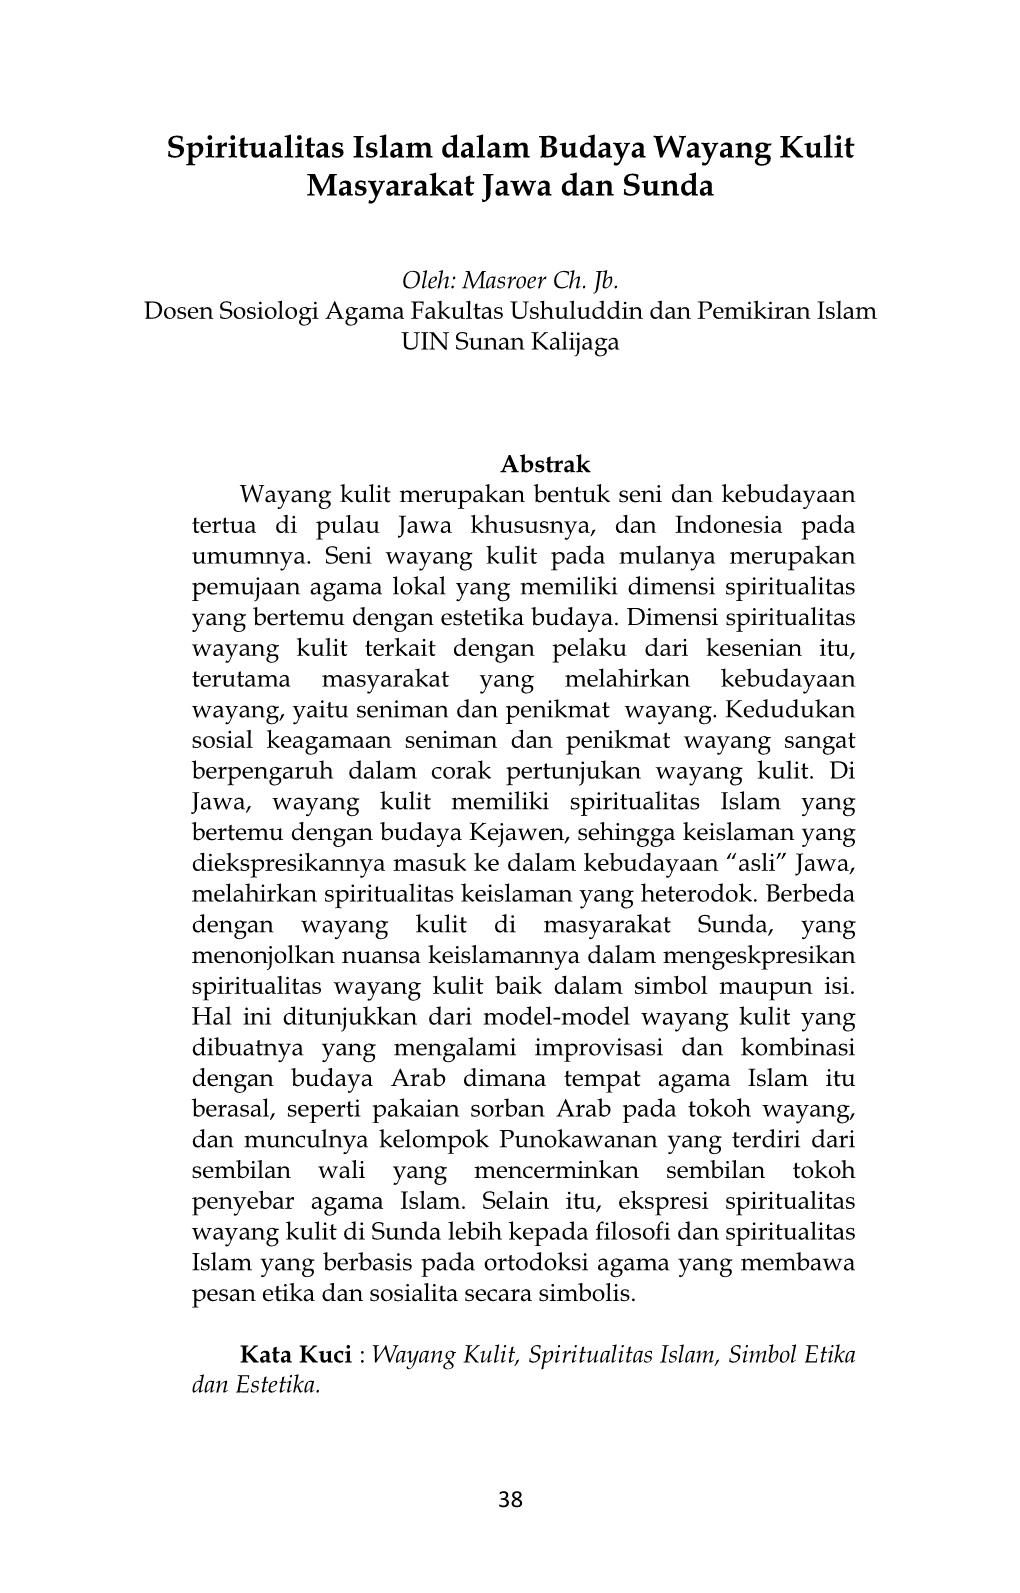 Spiritualitas Islam Dalam Budaya Wayang Kulit Masyarakat Jawa Dan Sunda